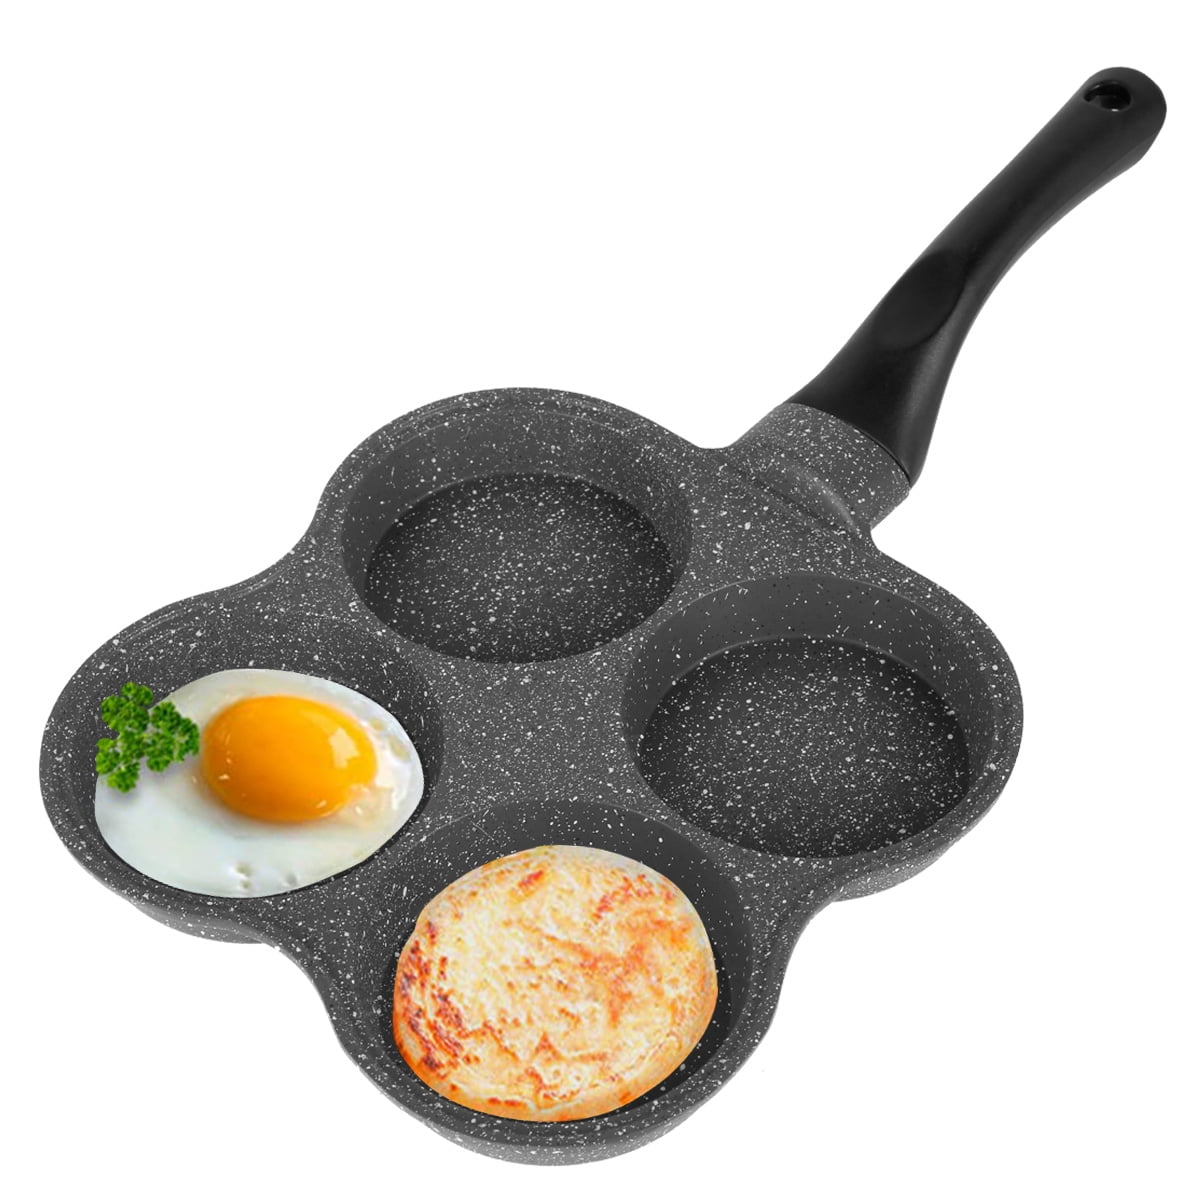 Fyrome Pancake Pan Non-Stick Fried Egg Pan 4 Holes Frying Pan Pancakes  Maker with Handle Crepe Pan for Breakfast Eggs Kitchen Utensils Burger Eye  Pan